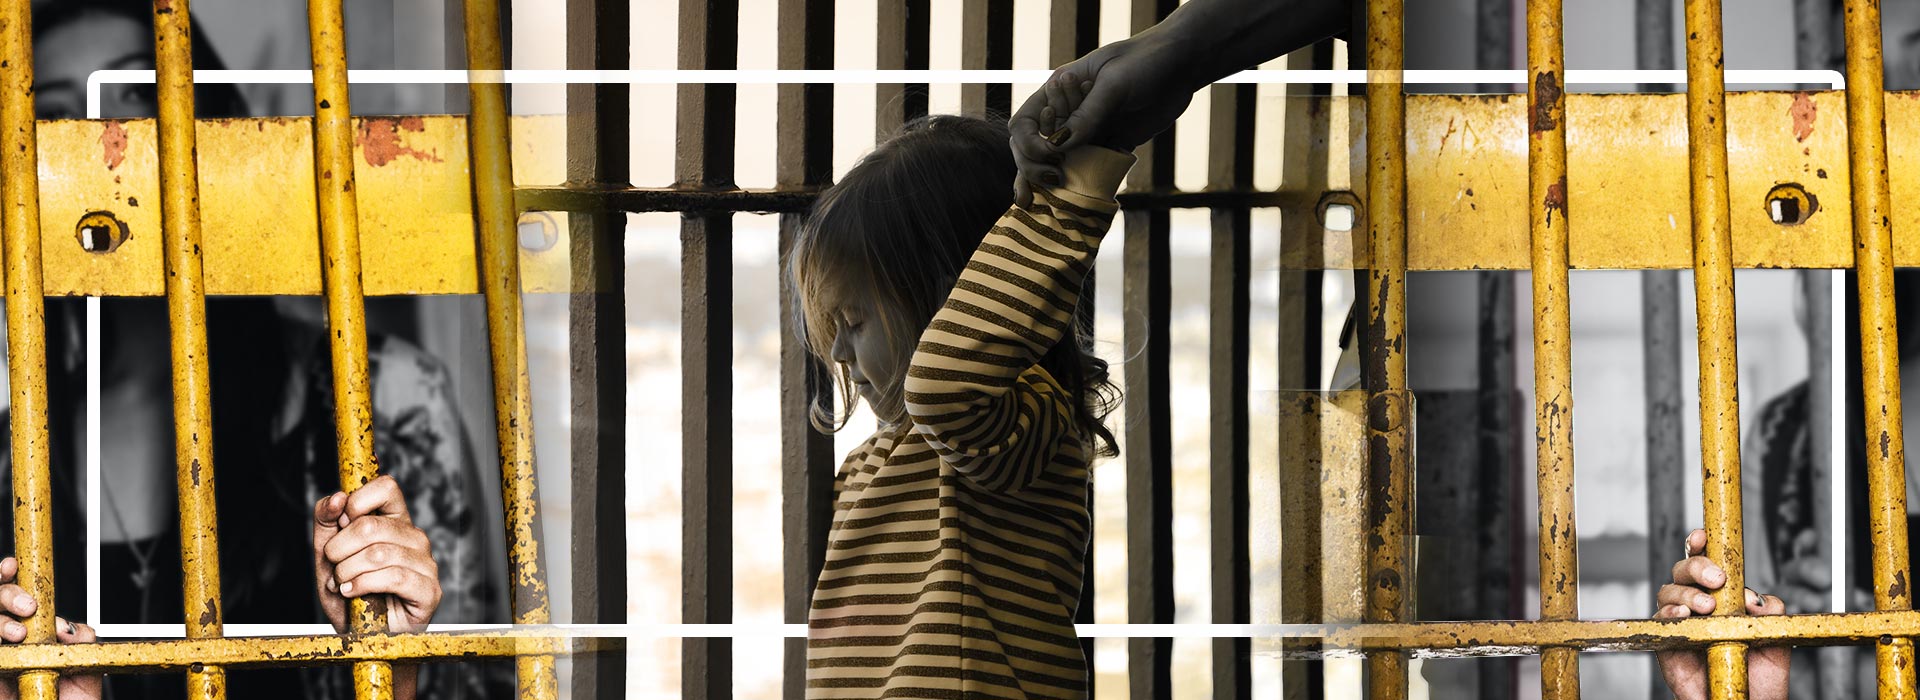 “Mai più bambini in carcere”. La proposta di legge del Pd e il nuovo regolamento penitenziario